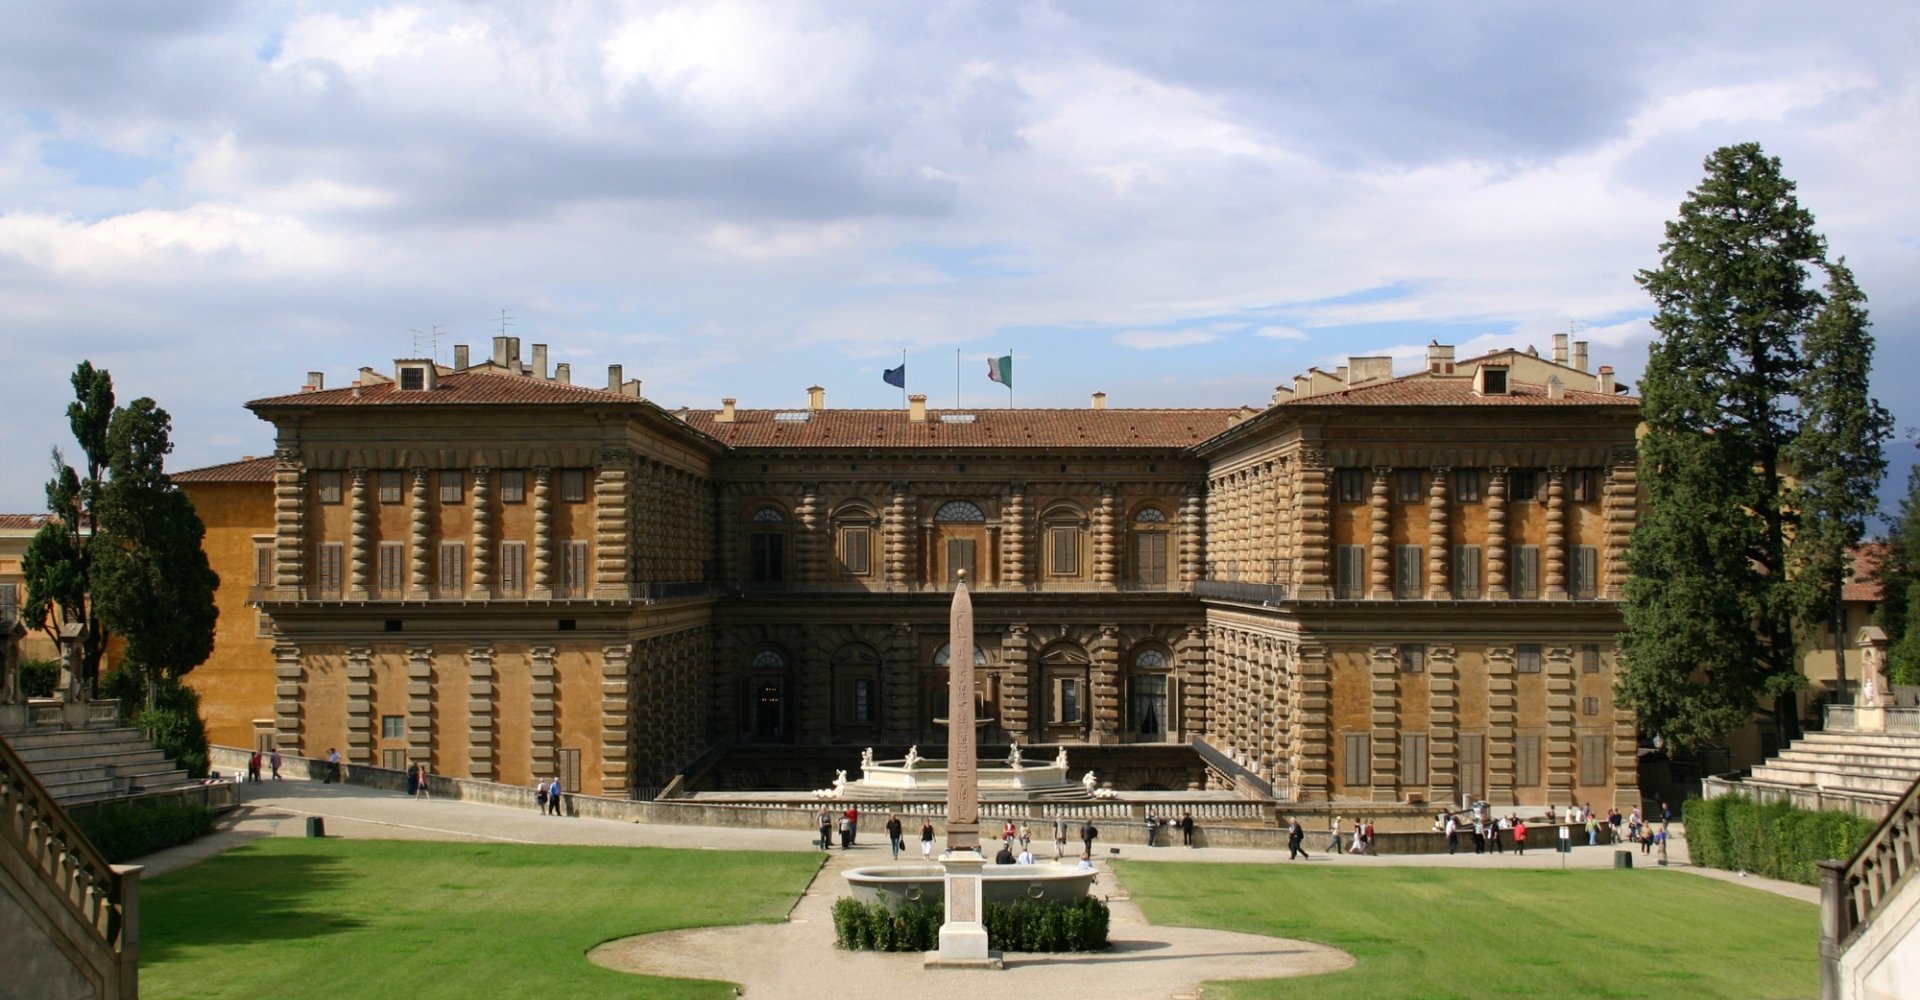 Palazzo Pitti vom Boboli-Garten aus gesehen